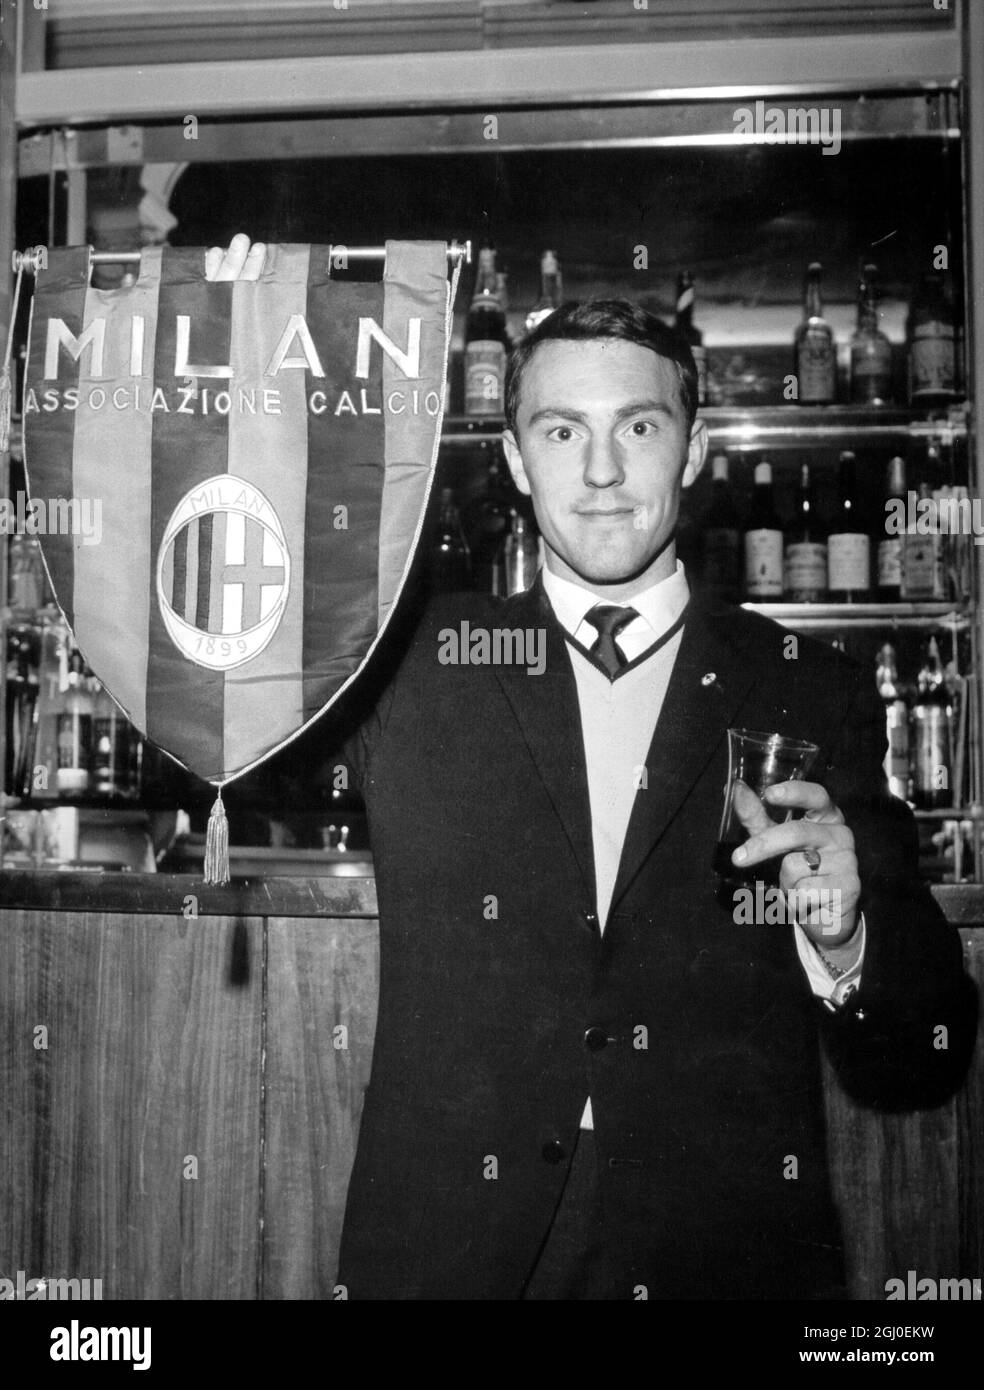 Jimmy Greaves, England und Chelsea Inside, der vom Milan Soccer Club unterzeichnet wurde, hält eine Flagge des Milan Soccer Teams, als er auf einen Toast seiner neuen Teamkollegen bei seiner Ankunft in Mailand reagiert. Mai 1961 Stockfoto